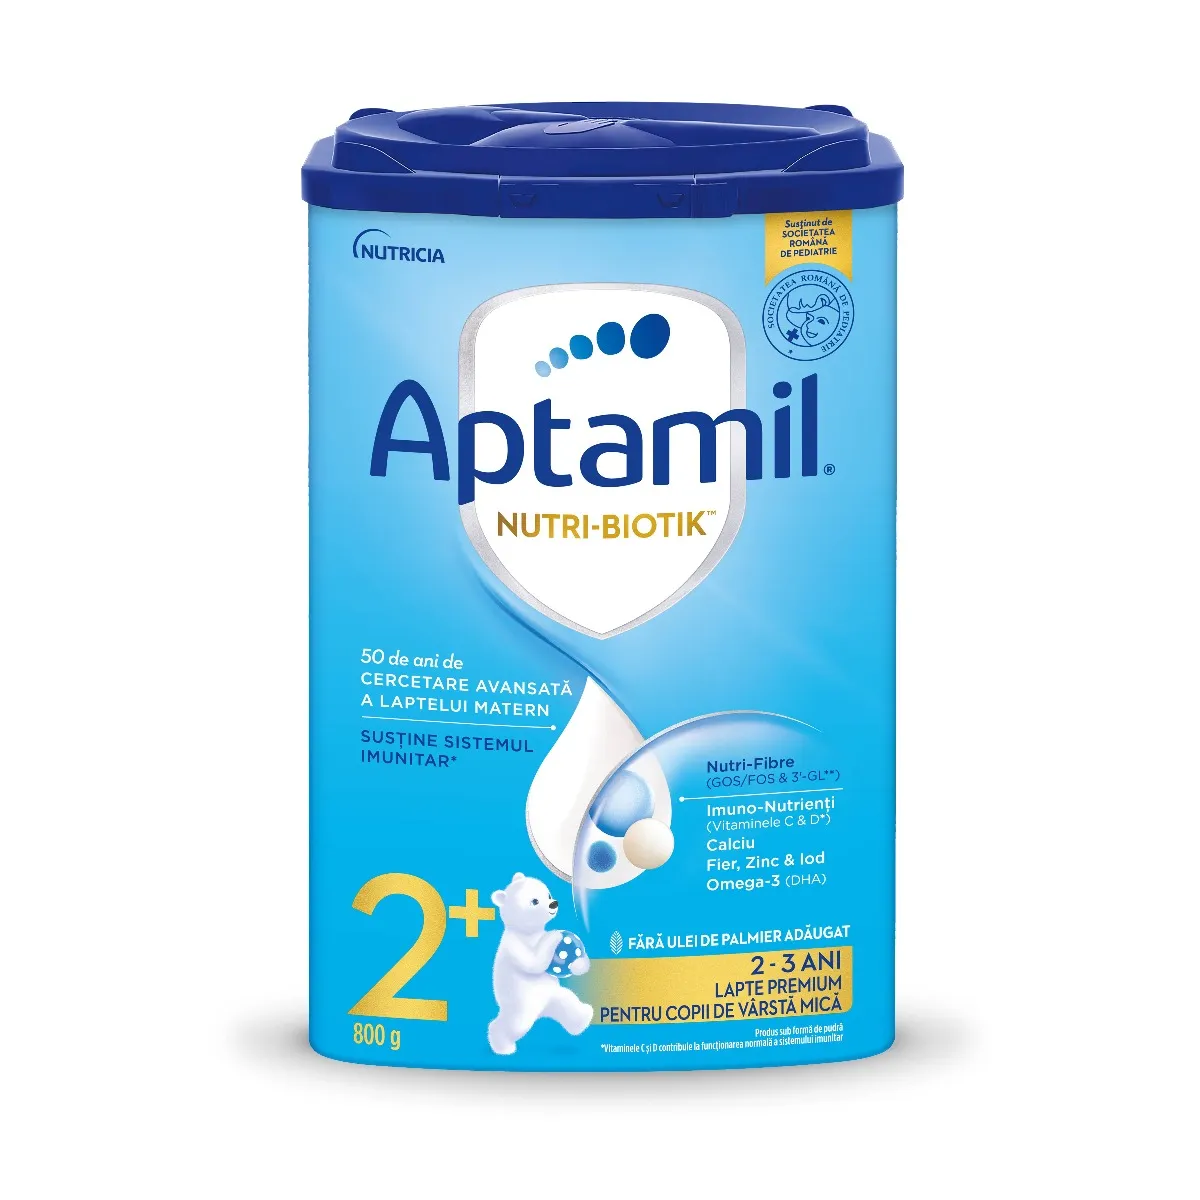 Lapte praf Aptamil NUTRI-BIOTIK 2+ pentru 2-3 ani, 800g, Nutricia 